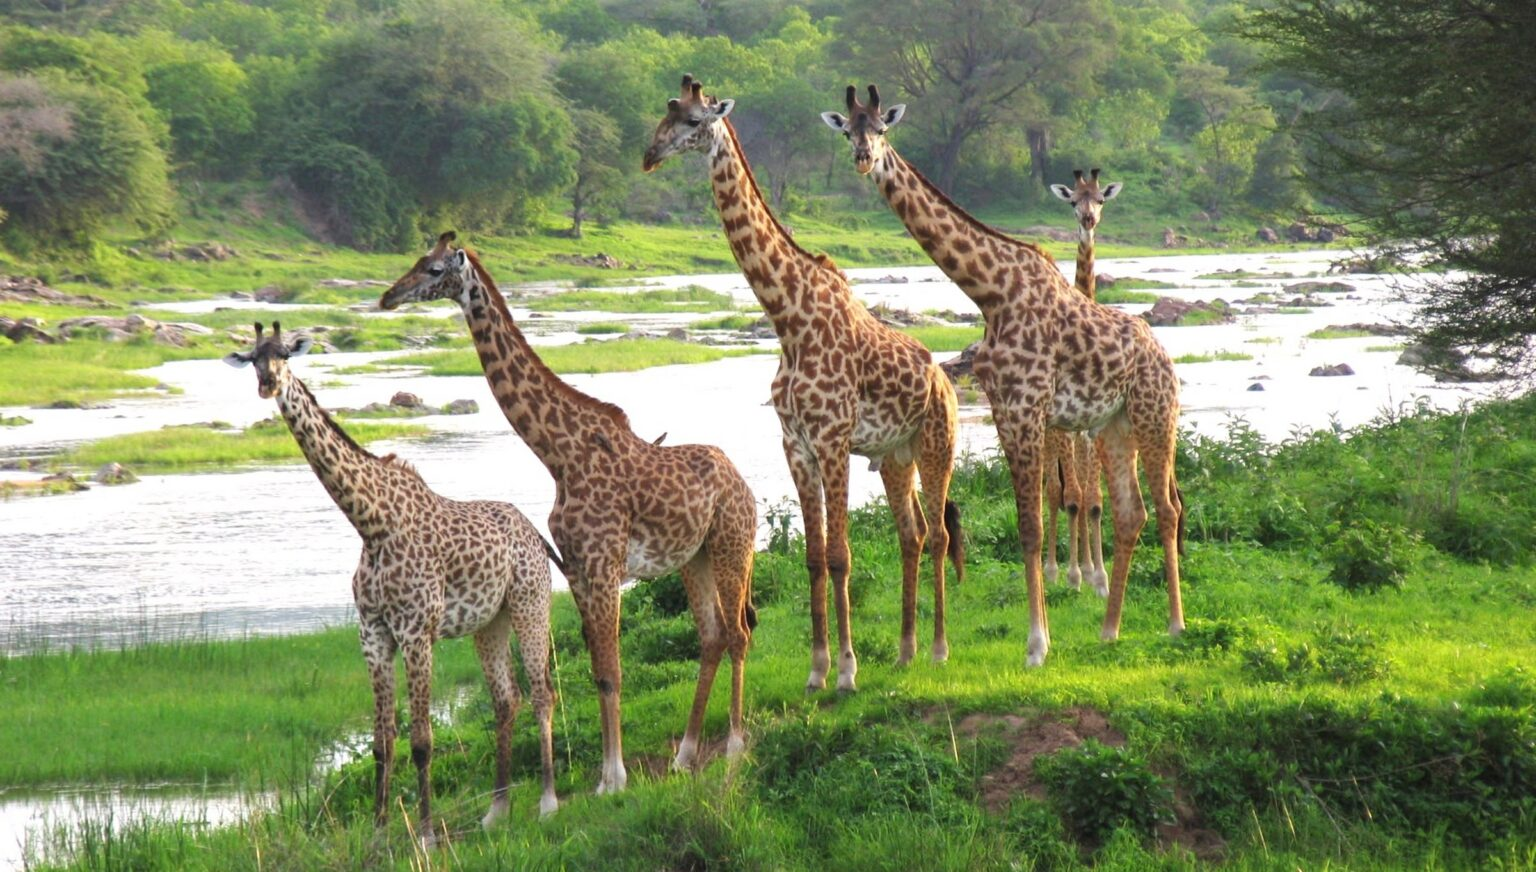 clothing for safari in kenya